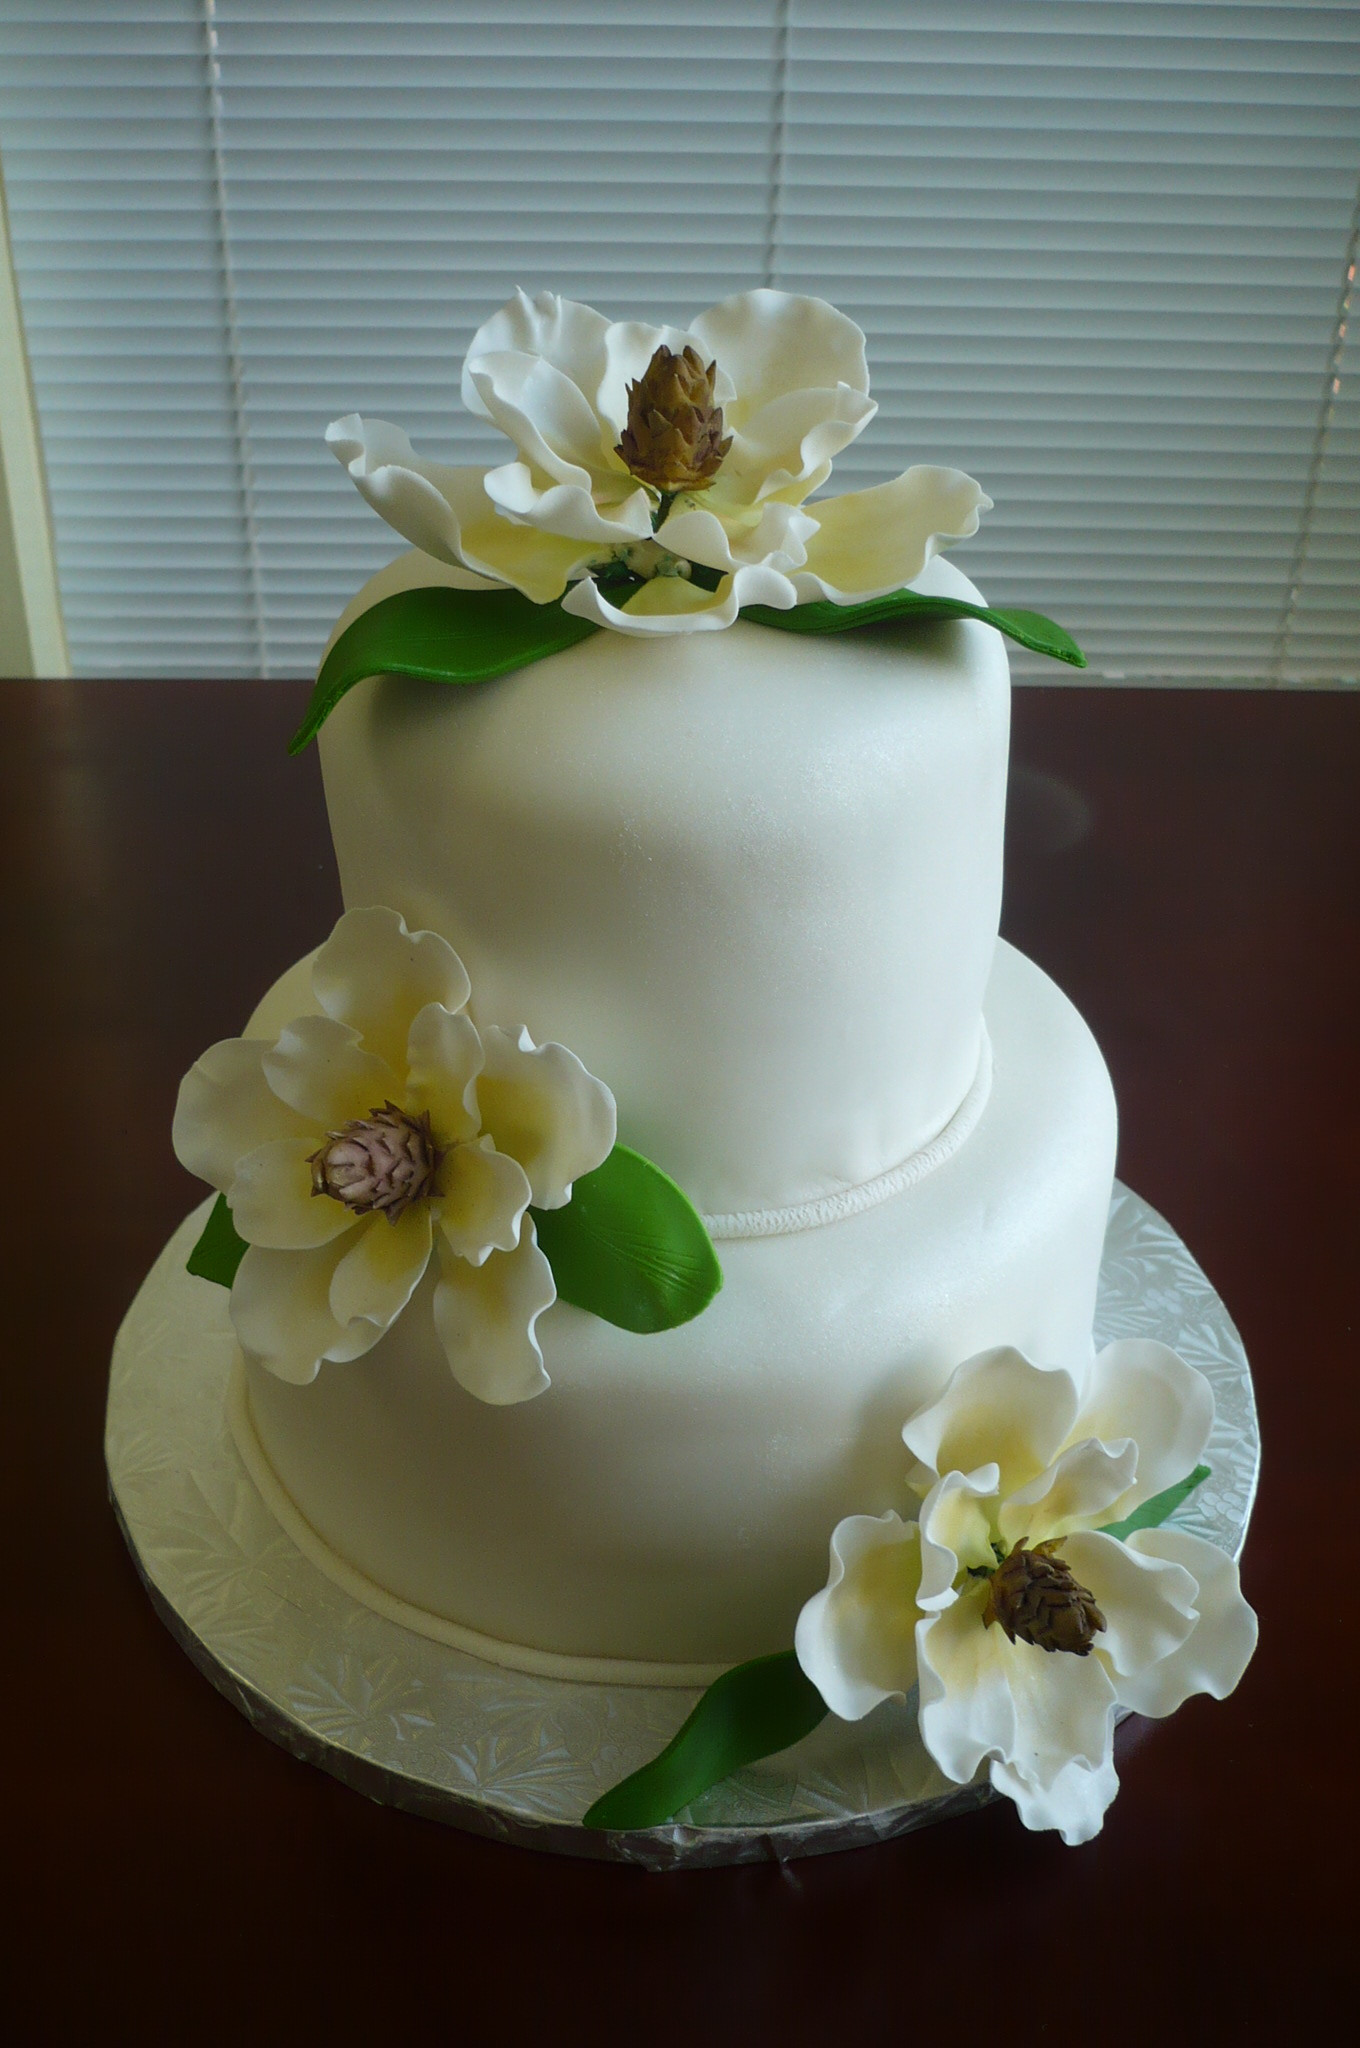 Magnolia Wedding Cakes
 Magnolia Wedding Cake